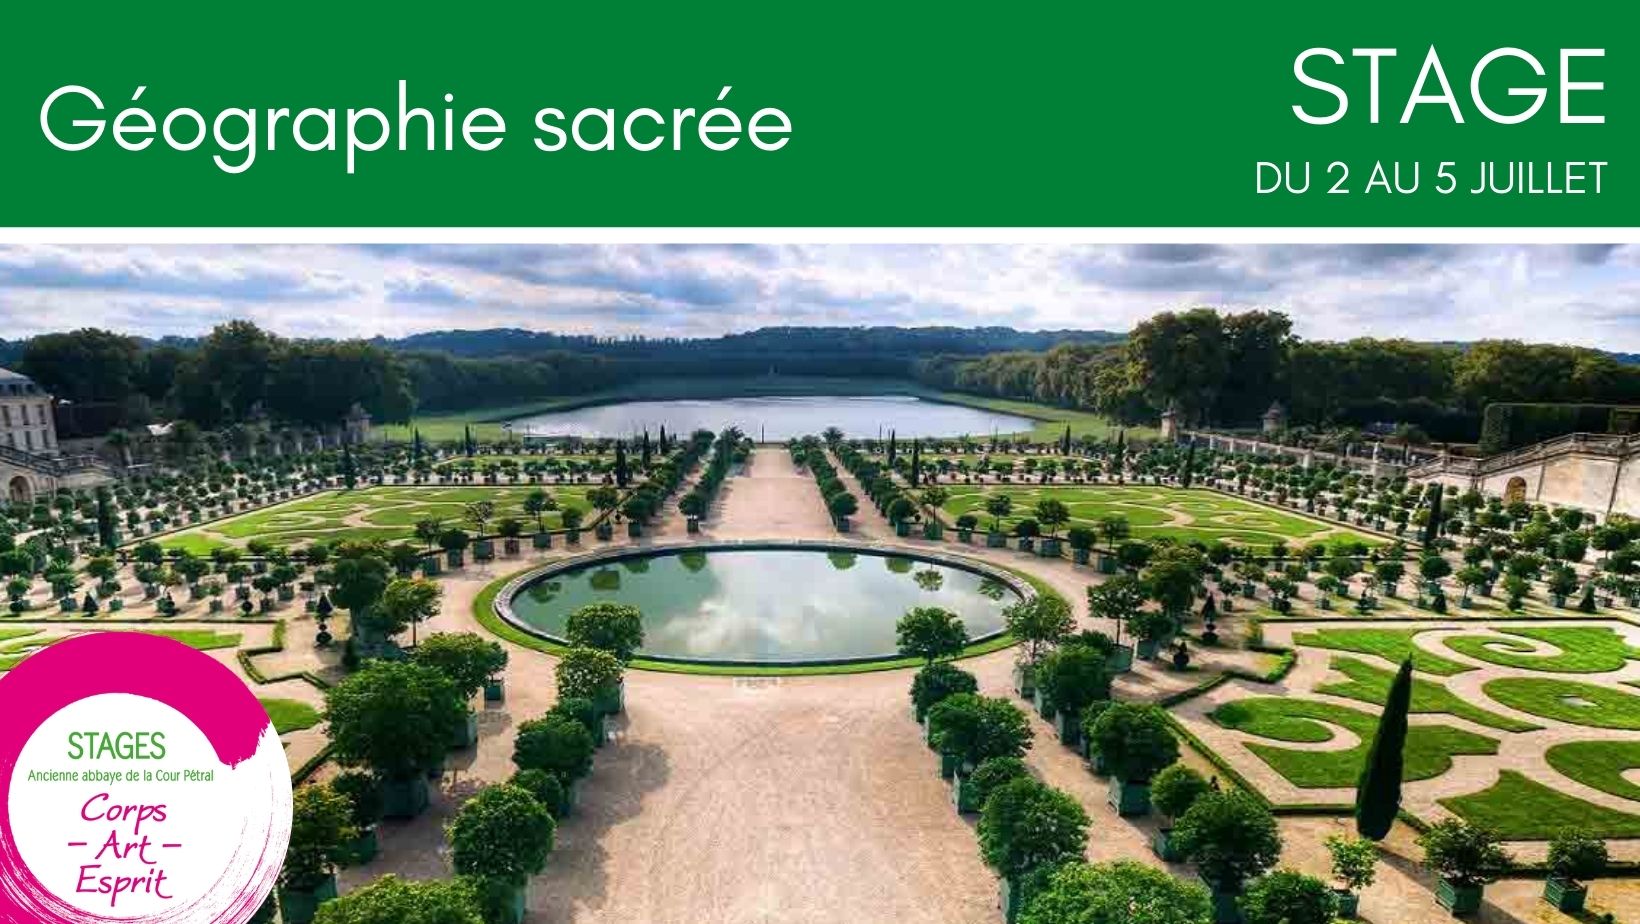 Stage d'été : Géographie sacrée et visite des Jardins de Versailles